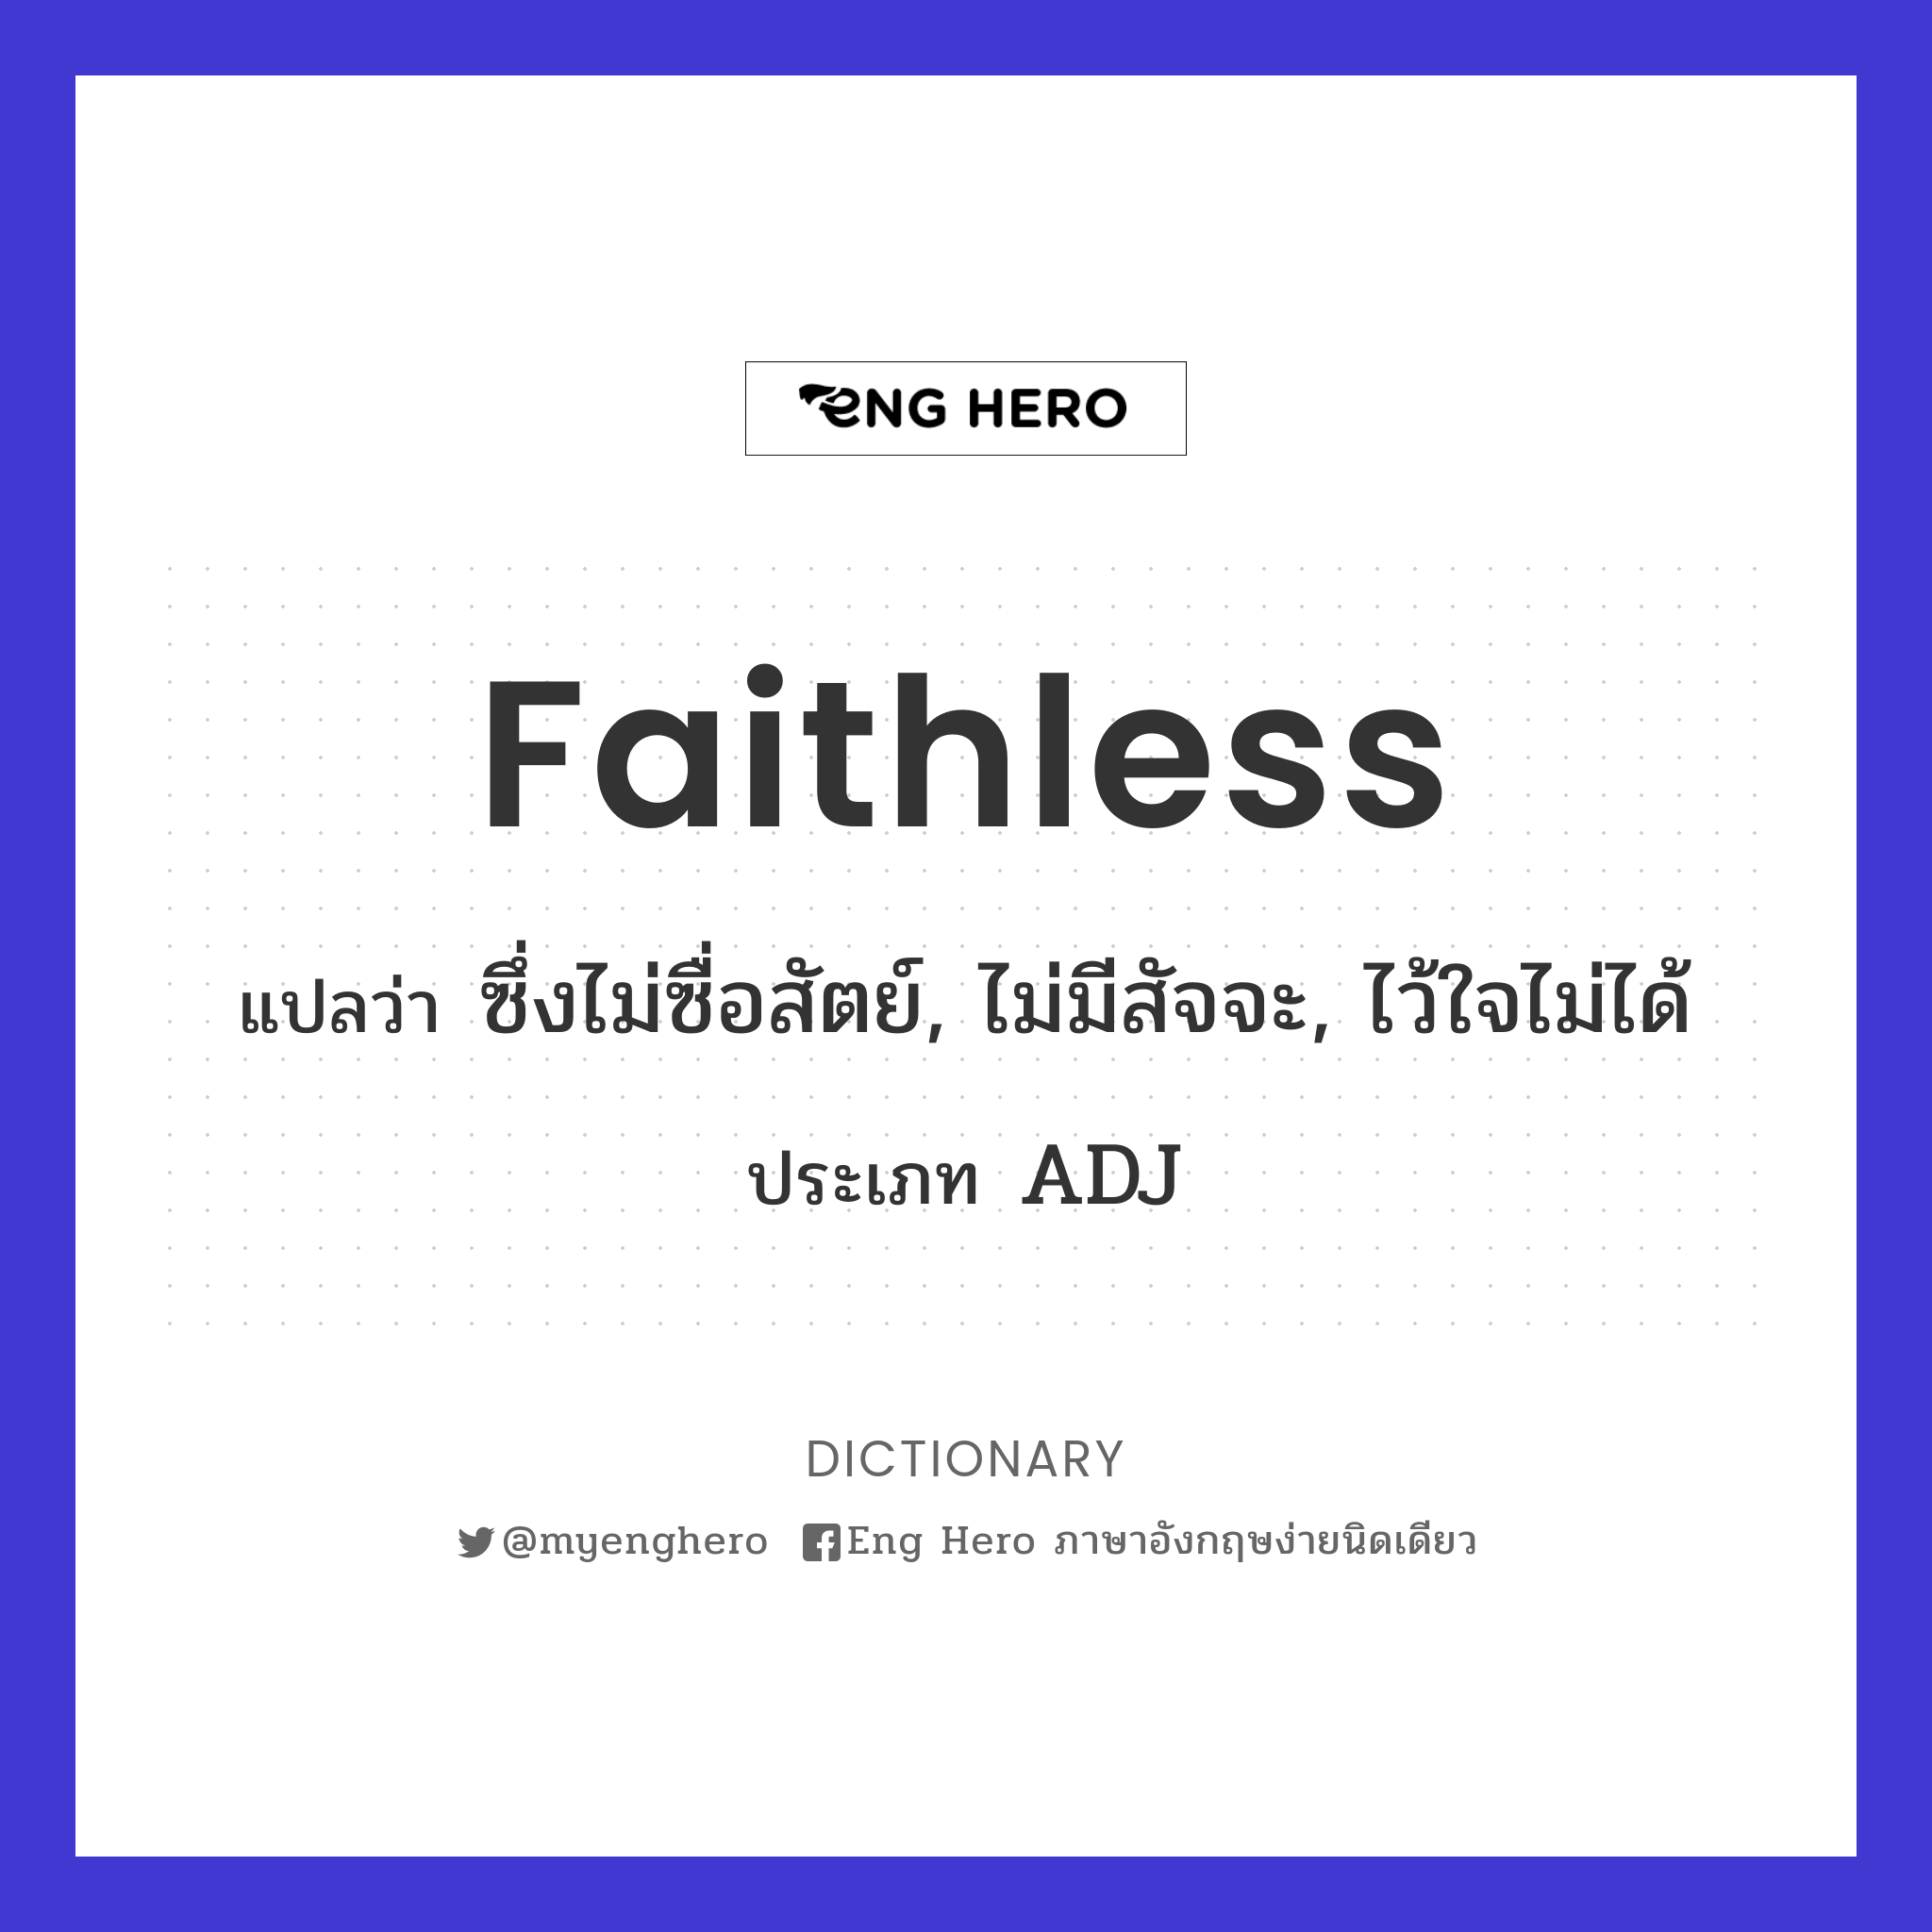 faithless